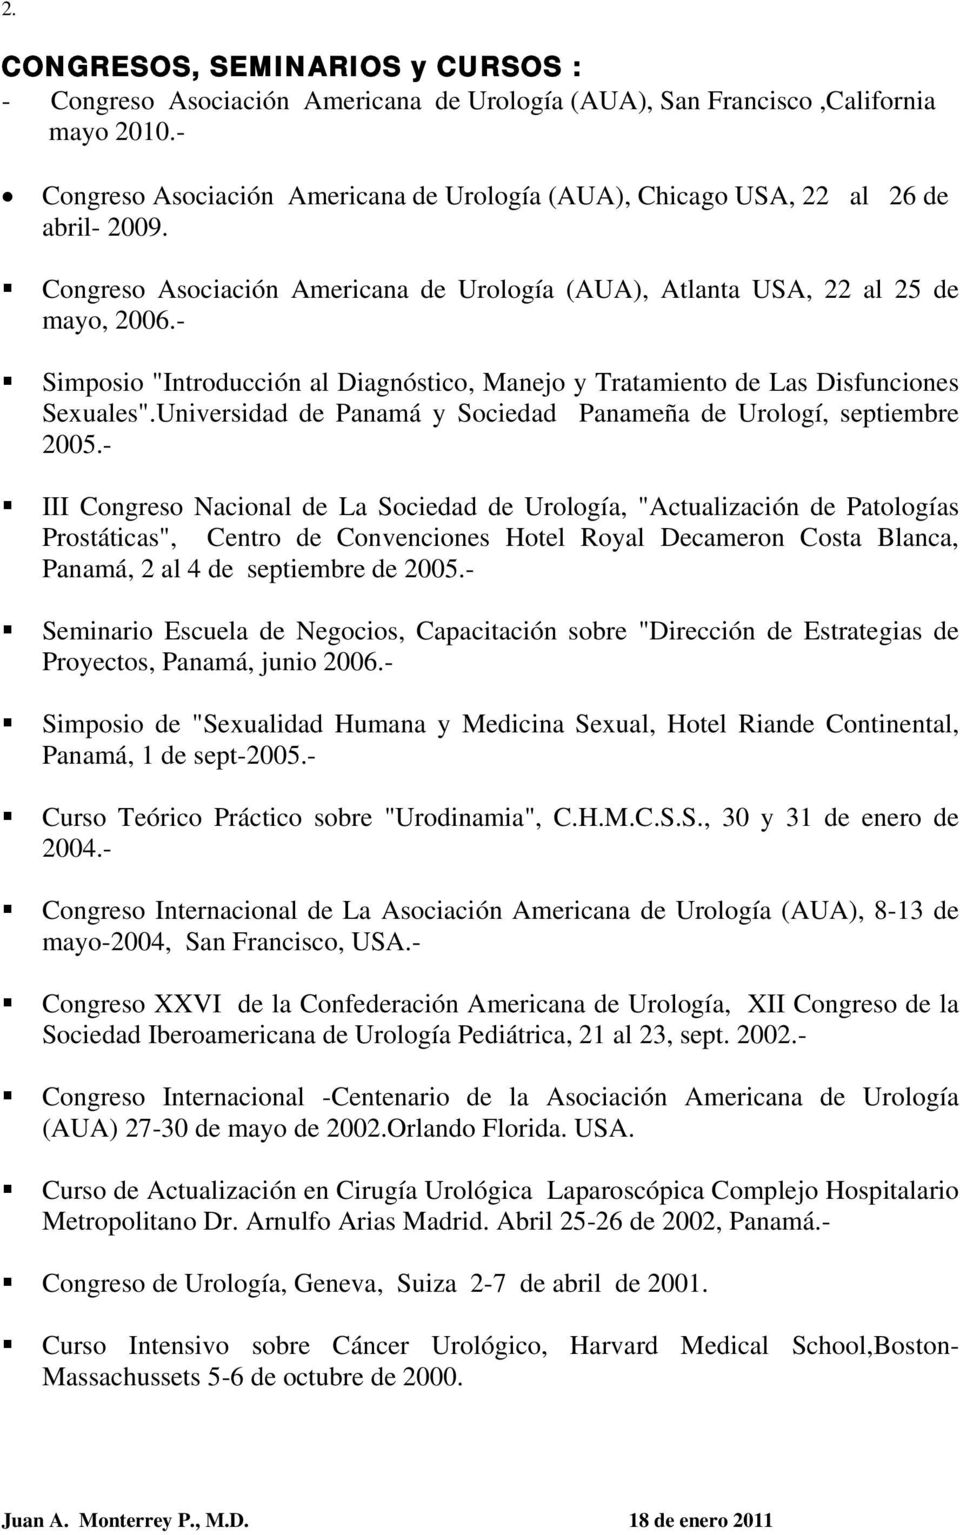 - Simposio "Introducción al Diagnóstico, Manejo y Tratamiento de Las Disfunciones Sexuales".Universidad de Panamá y Sociedad Panameña de Urologí, septiembre 2005.